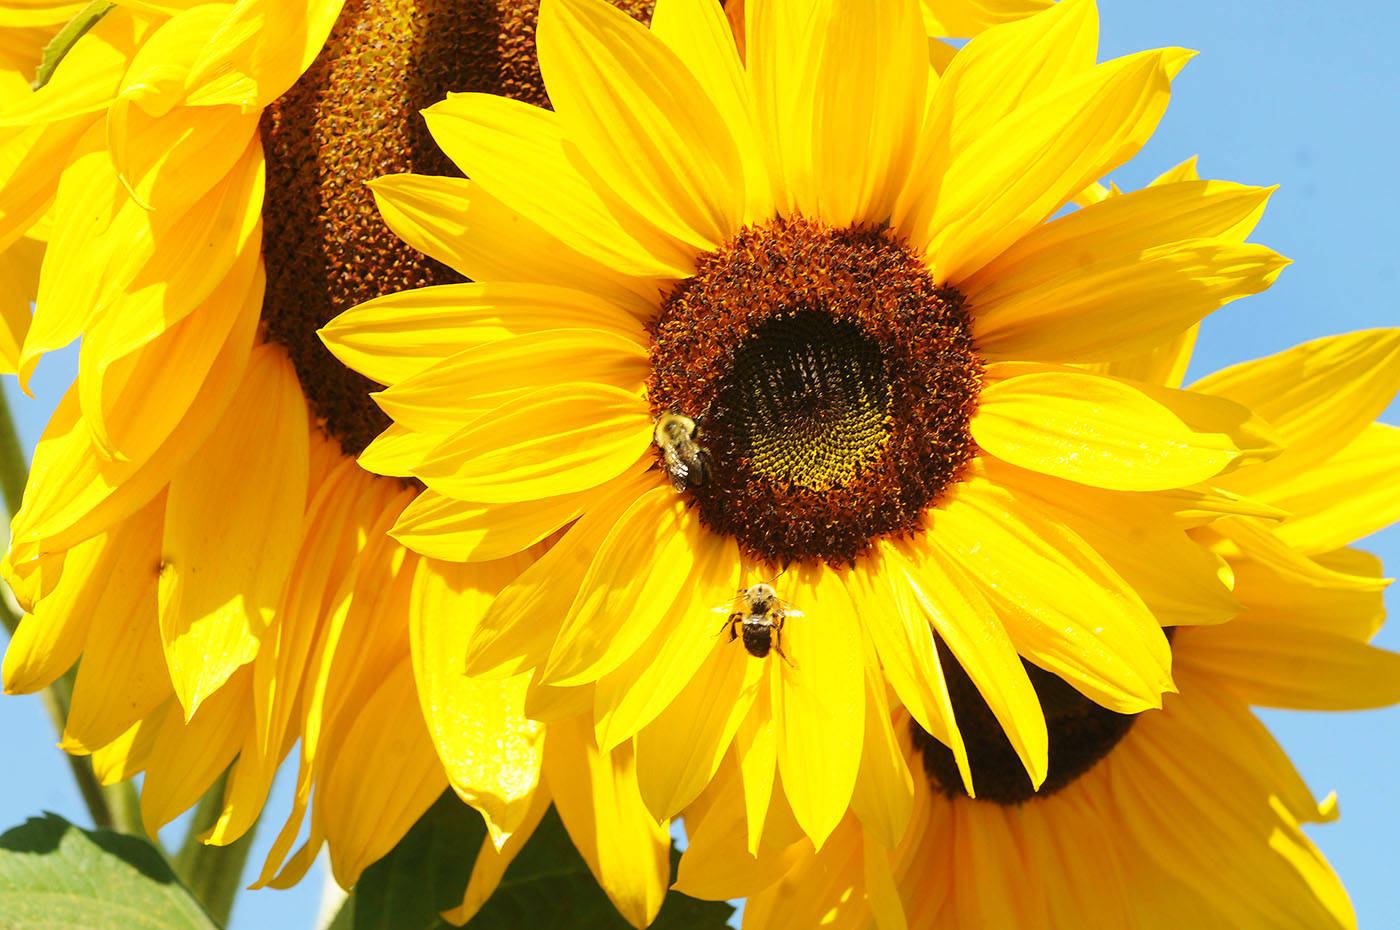 8306099_web1_170920-LAT-sunflowers1